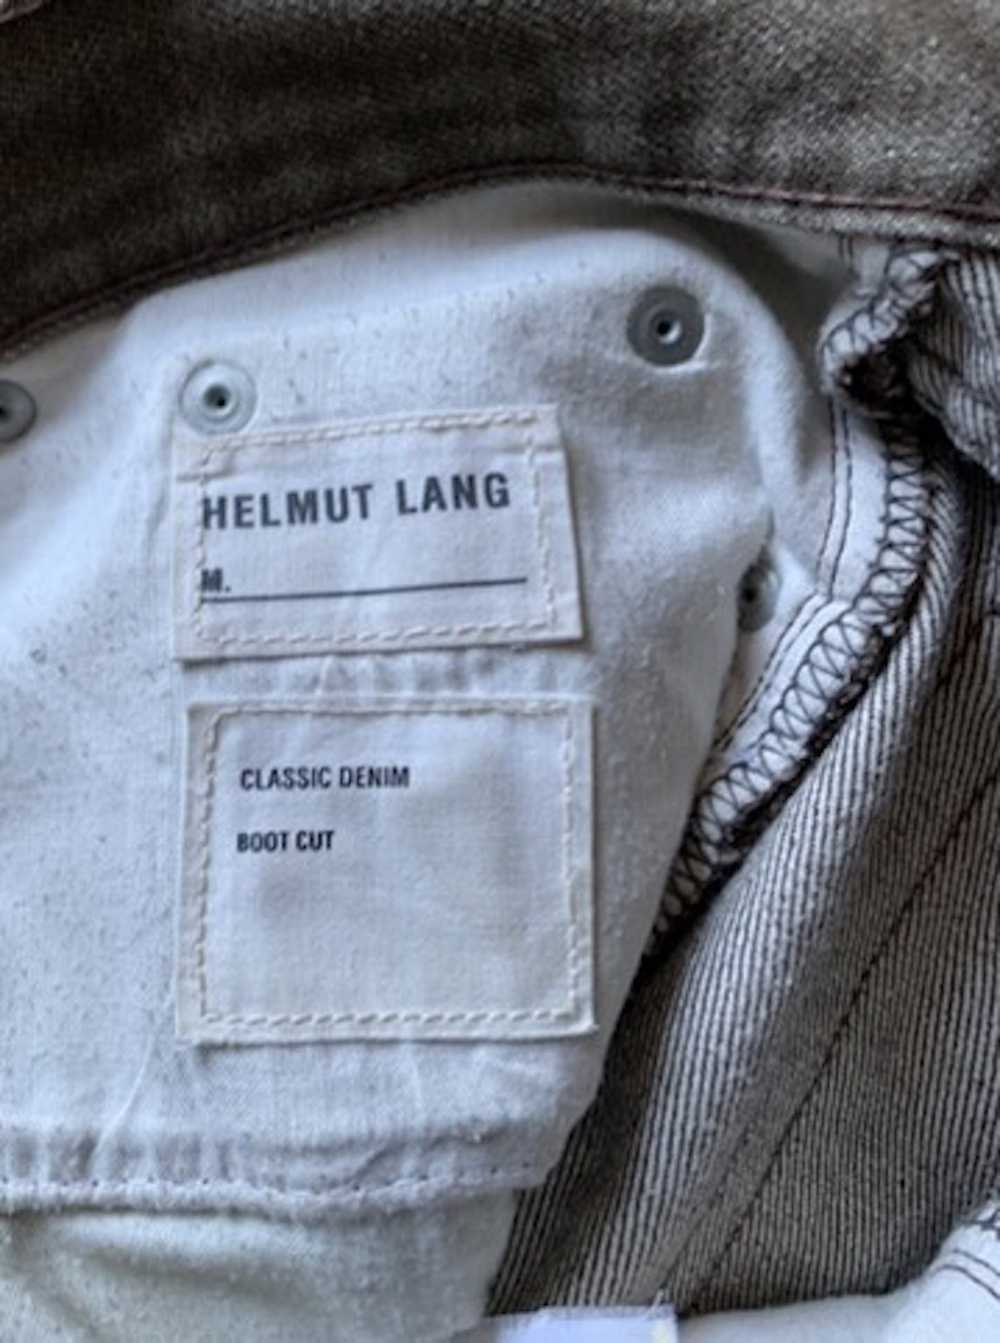 Helmut Lang Helmut Lang 1998 Vintage Jeans - image 3